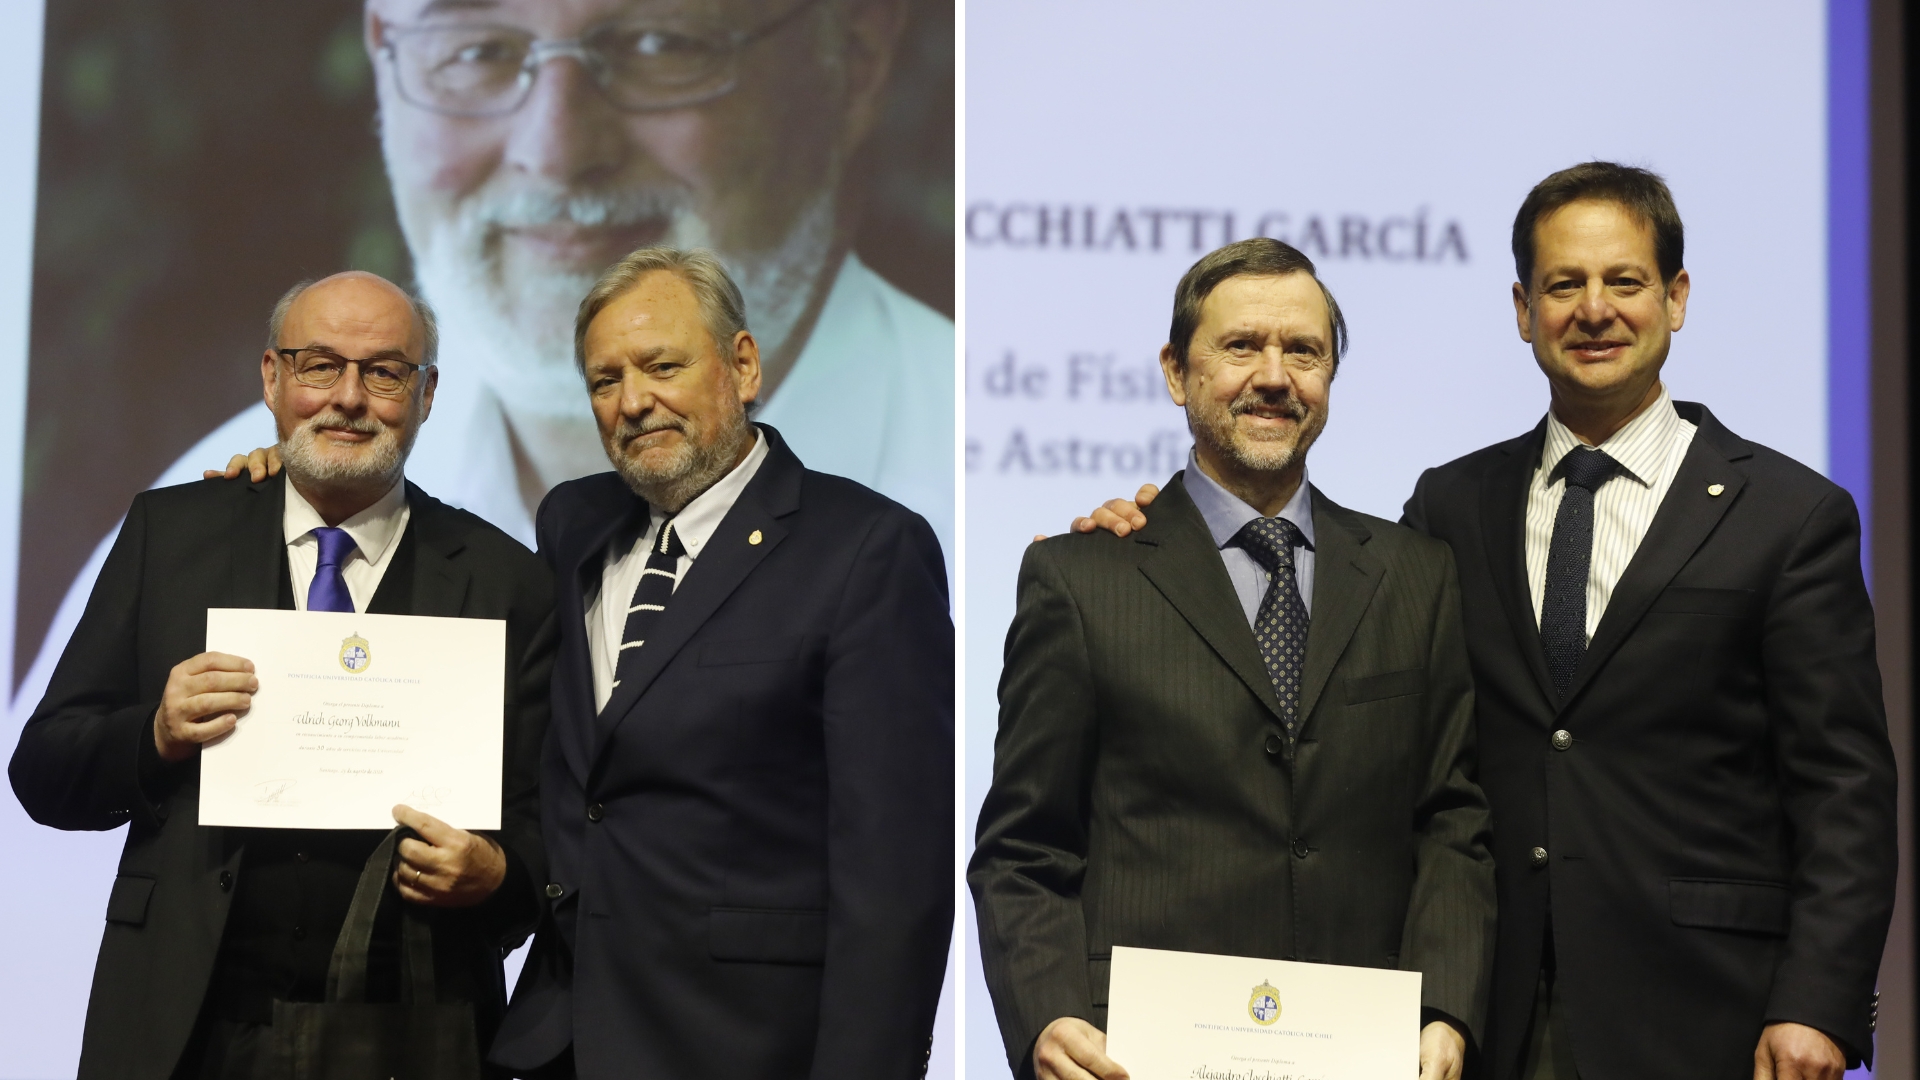 Los profesores Ulrich Volkmann y Alejandro Clocchiatti son reconocidos en la Ceremonia del Día de la Trayectoria Académica UC